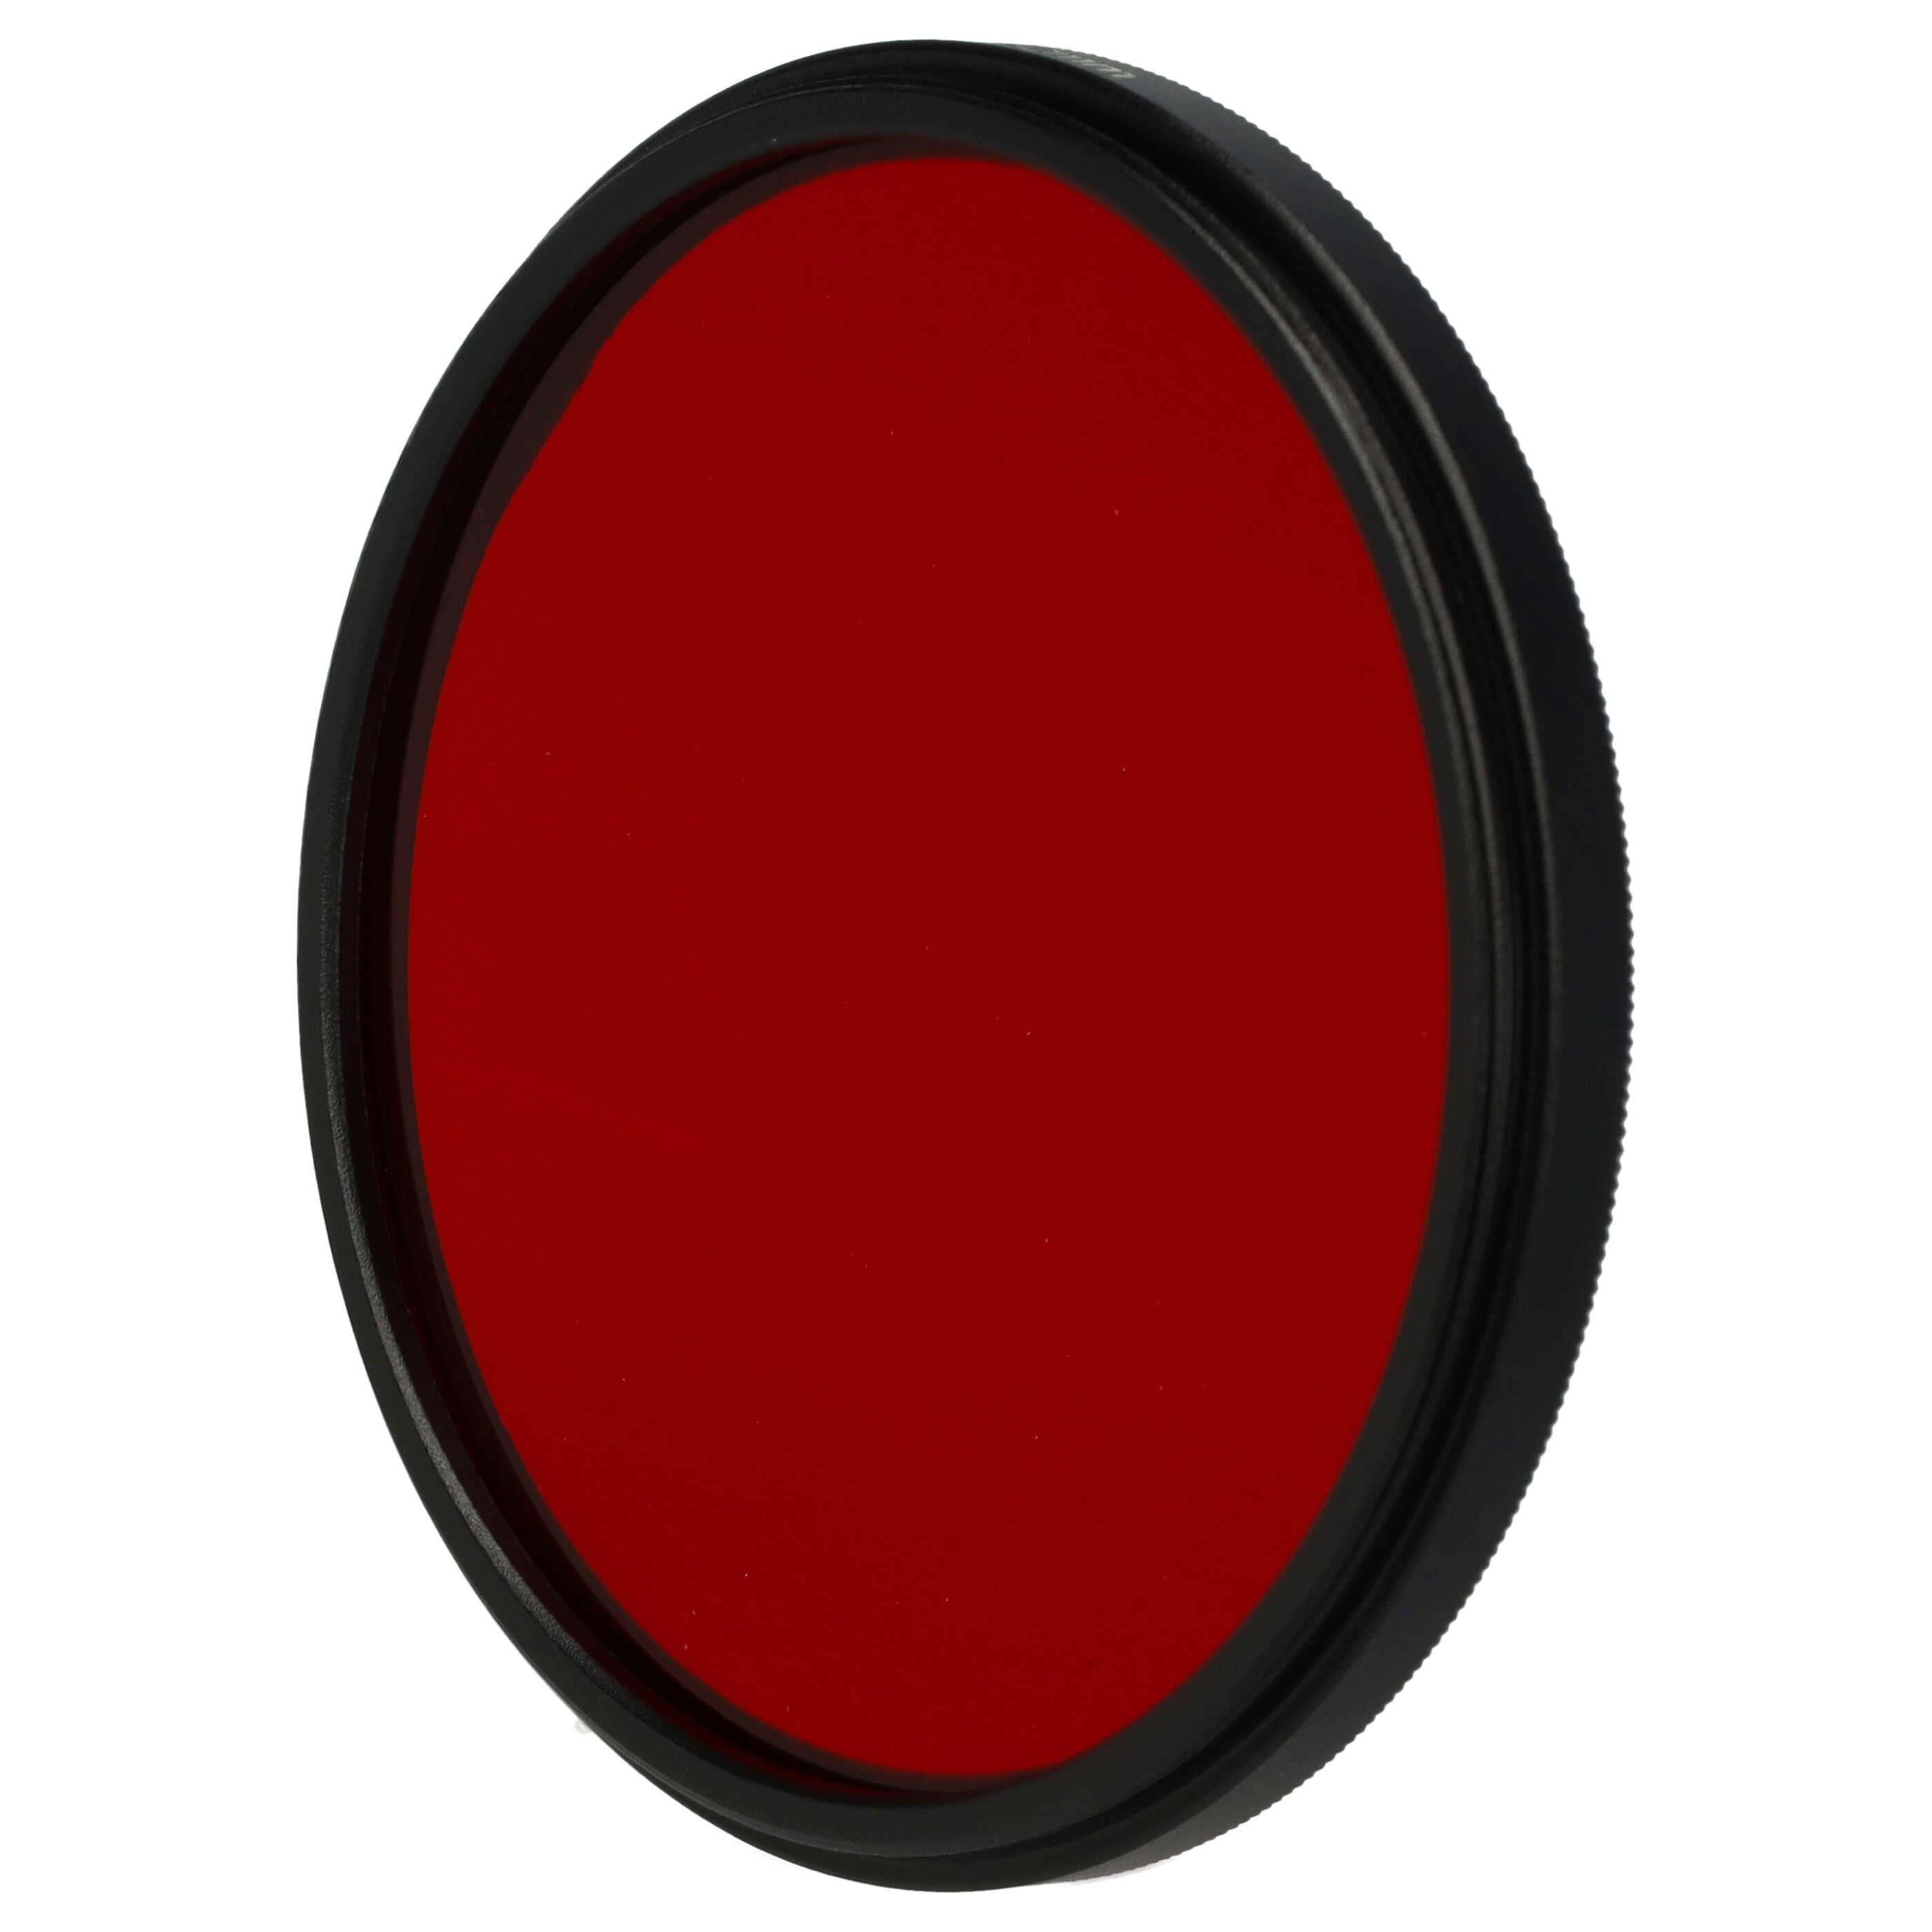 Farbfilter rot passend für Kamera Objektive mit 62 mm Filtergewinde - Rotfilter